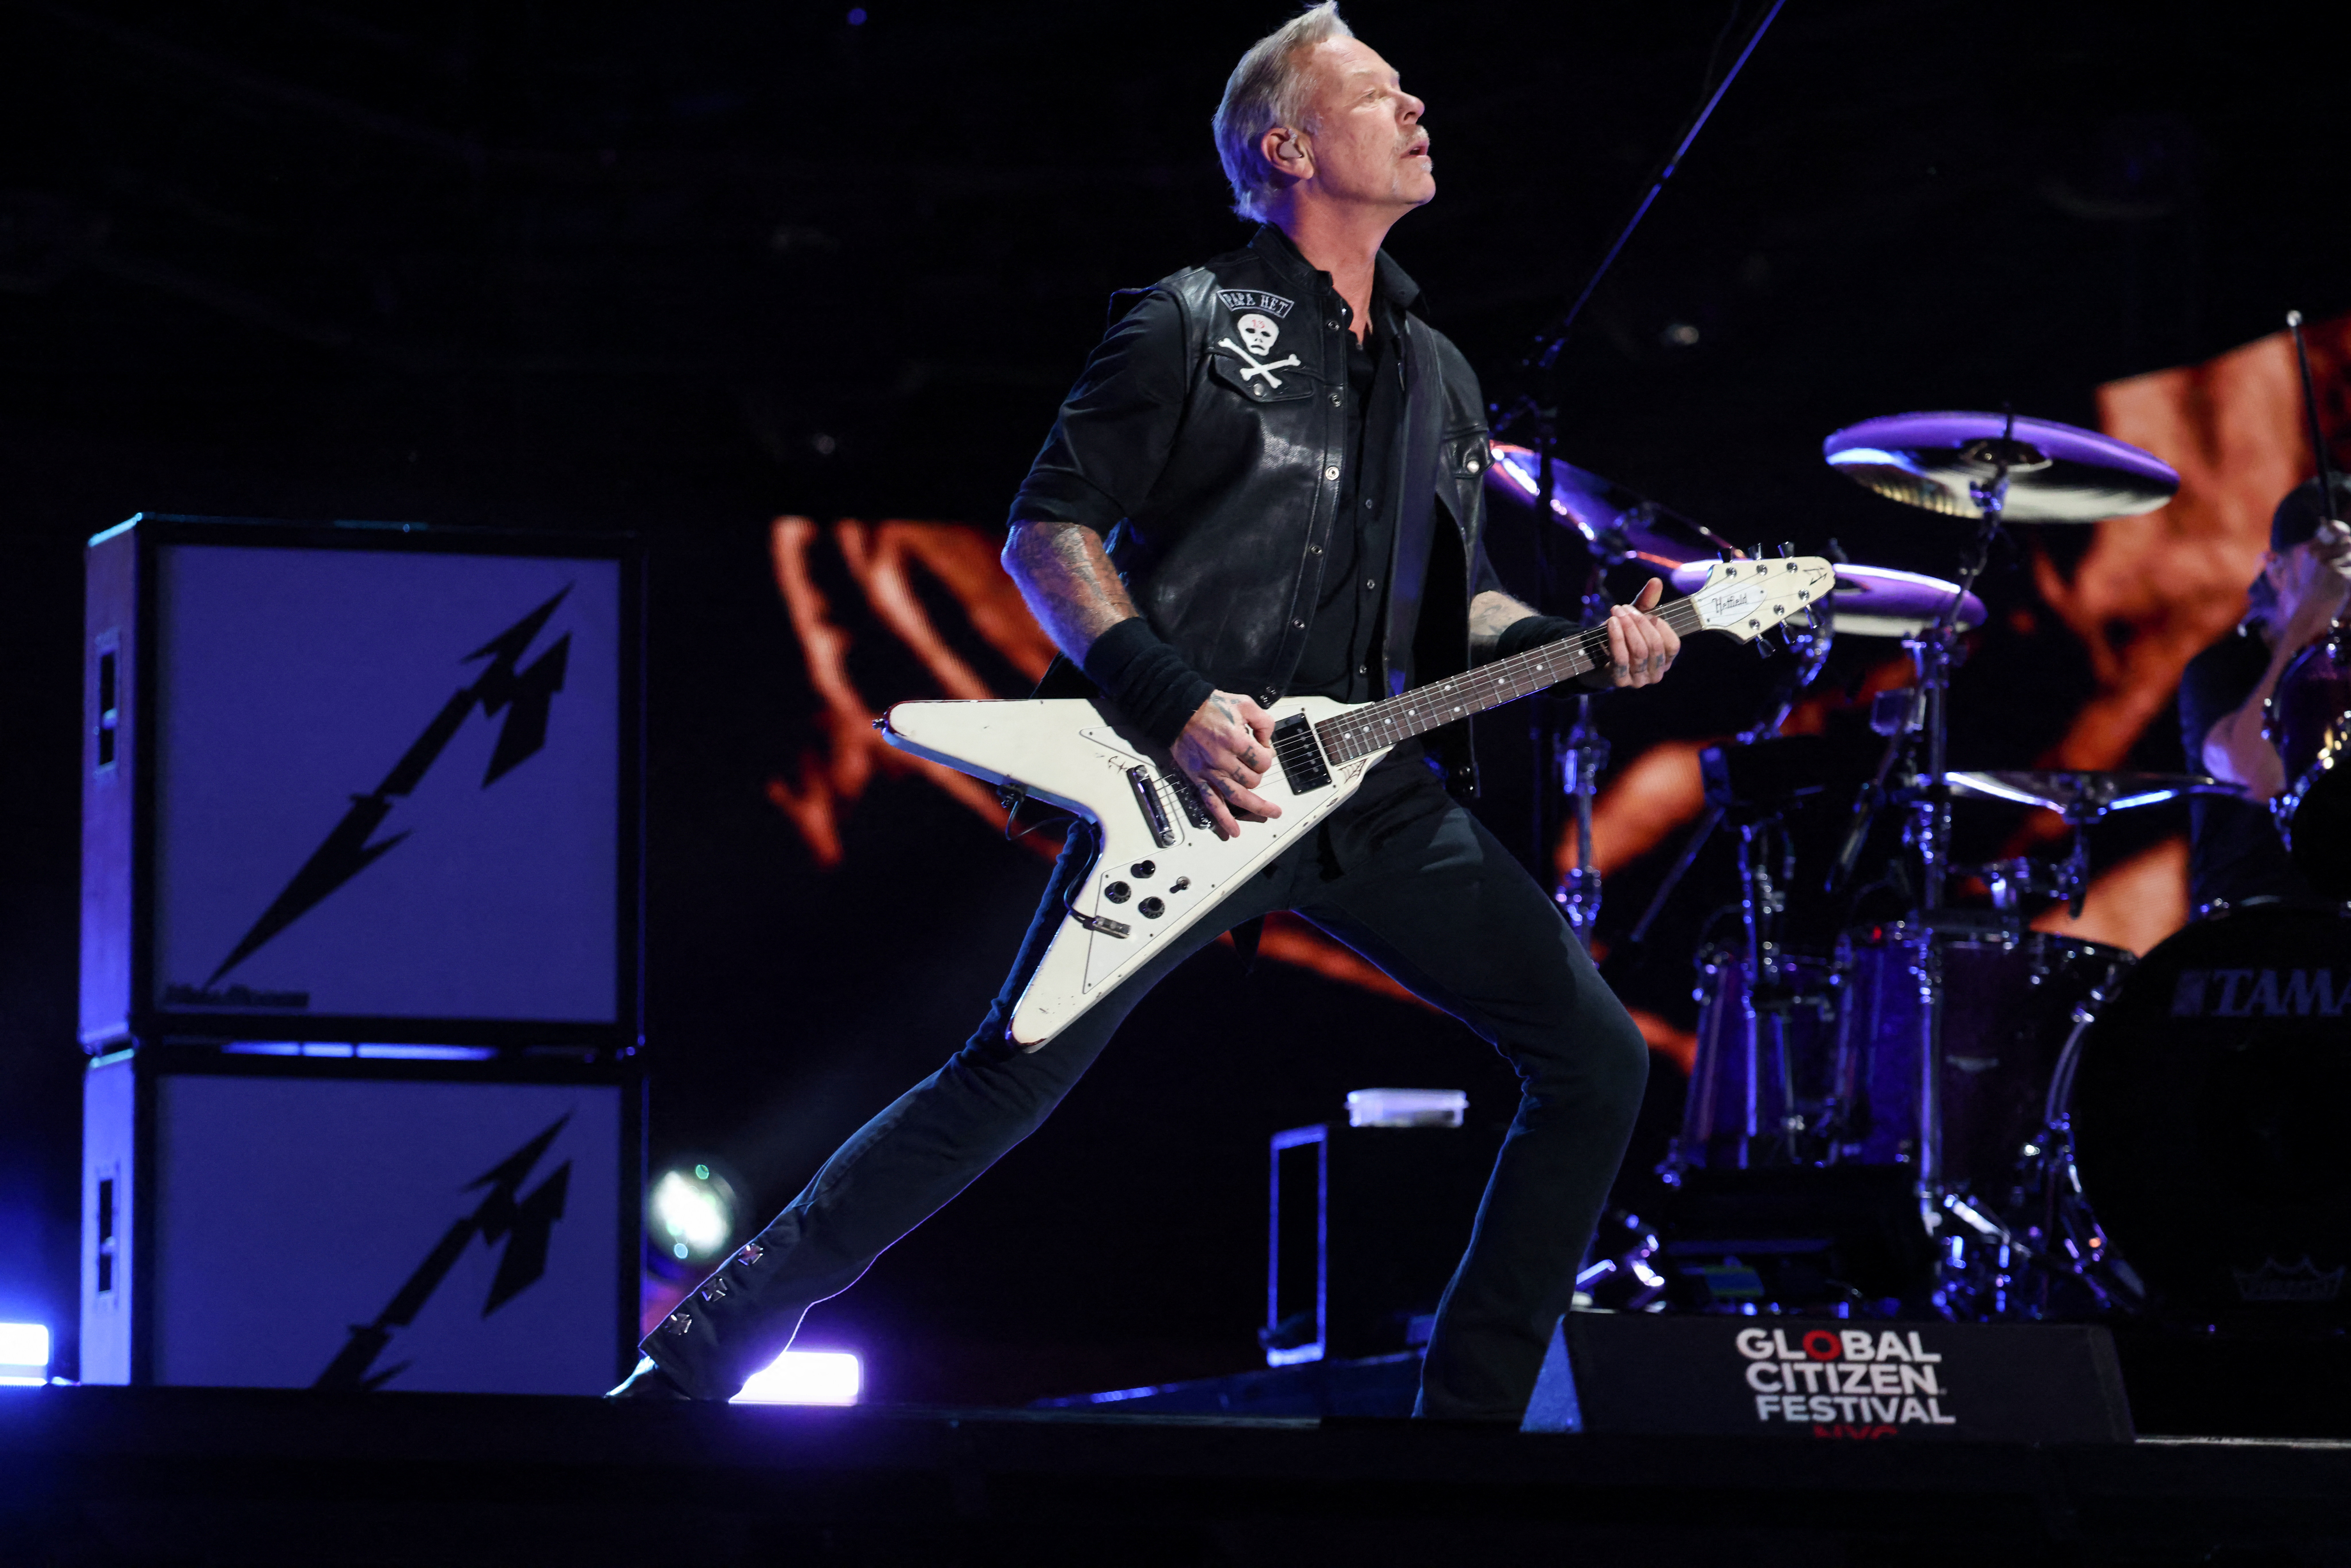 Metallica tocará un set diferente para cada uno de los shows y tendrá distintos teloneros cada noche.
(REUTERS/Caitlin Ochs)